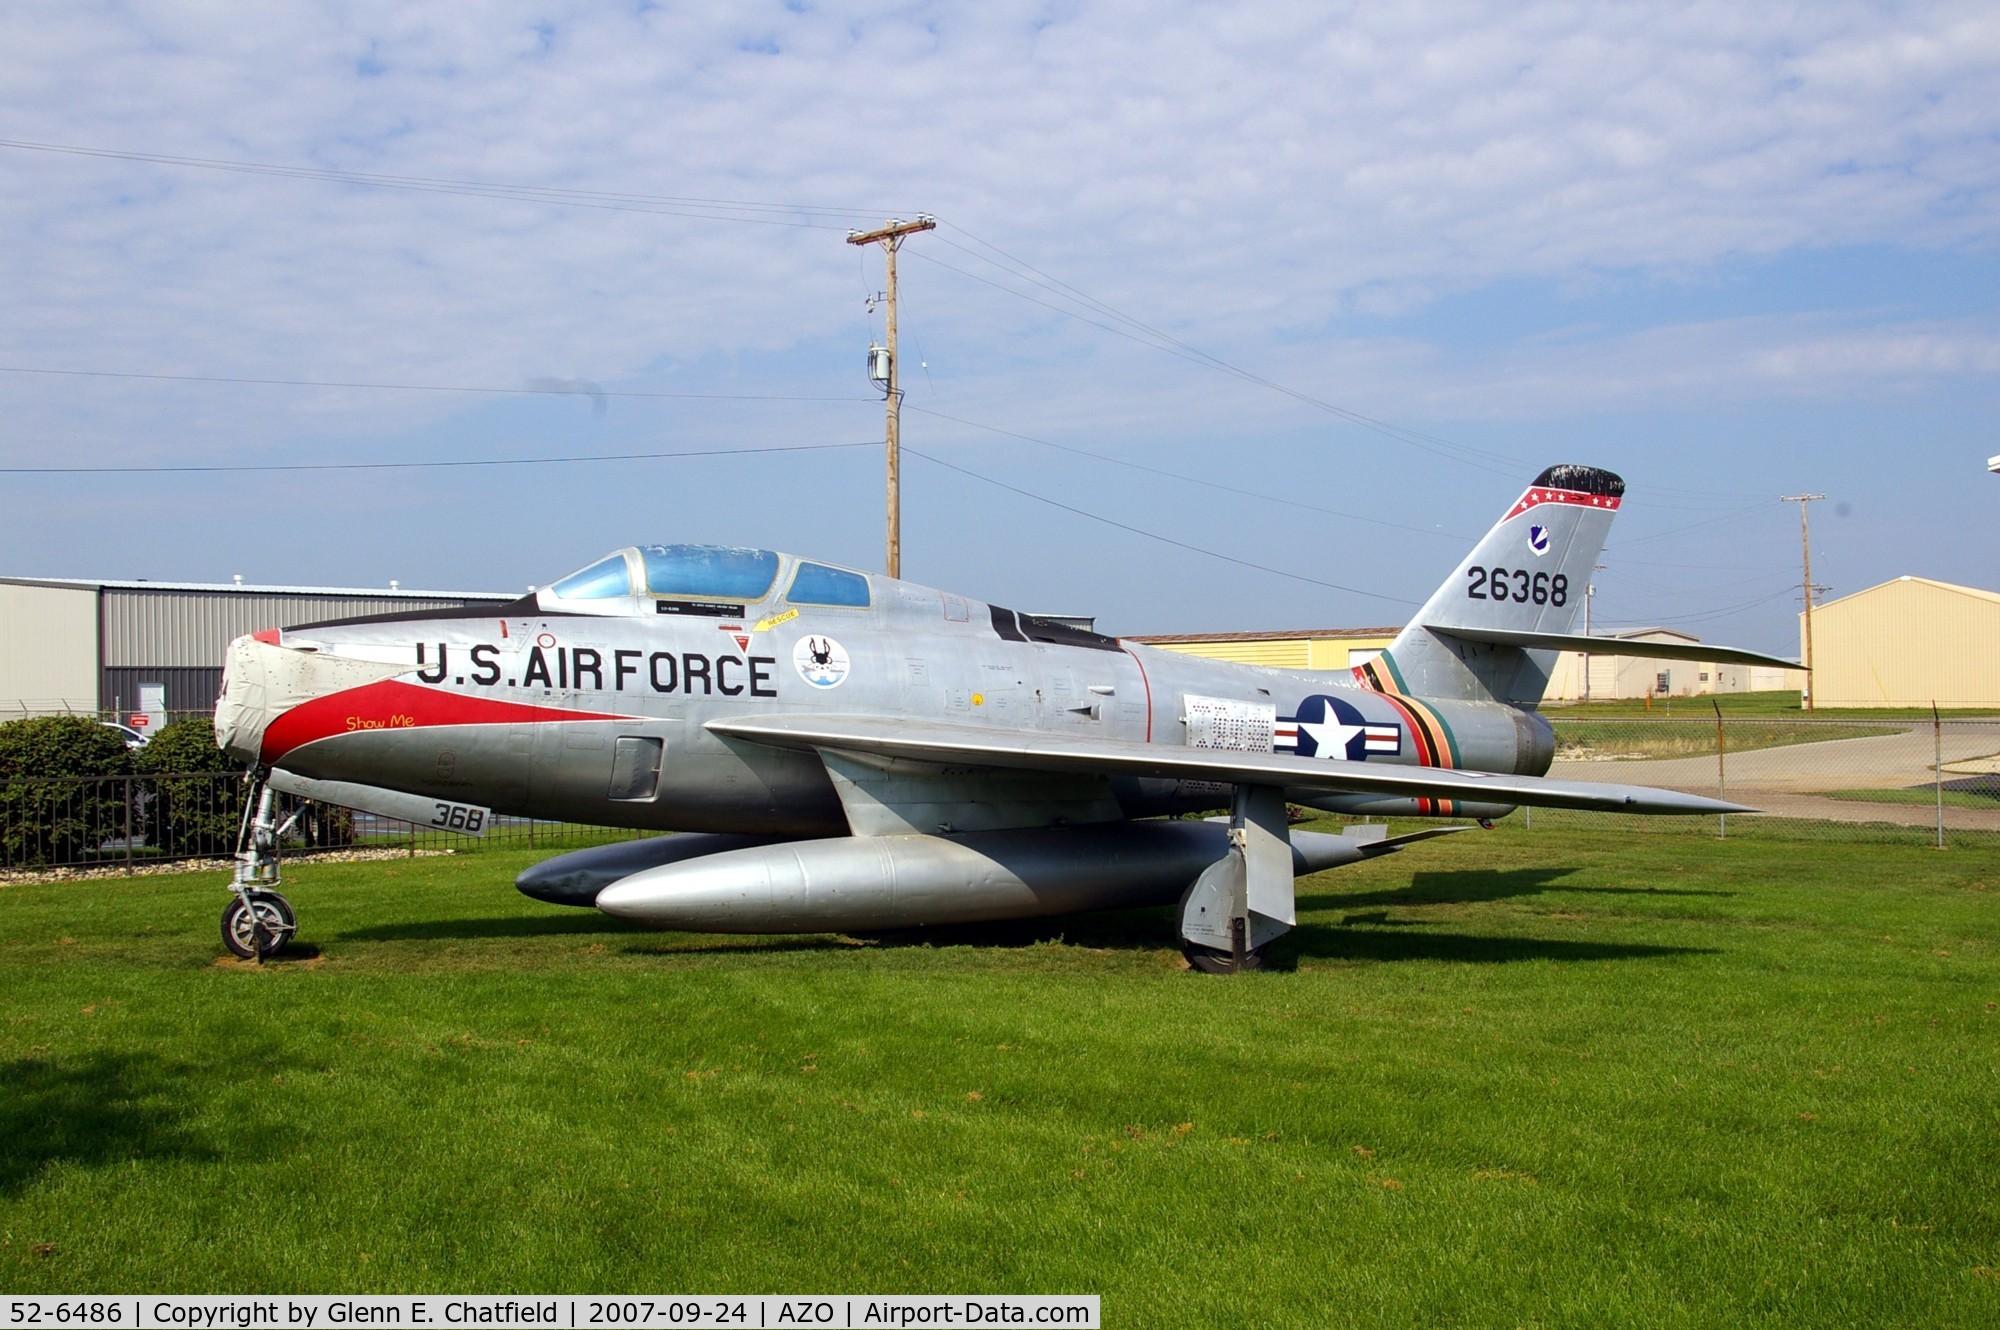 52-6486, 1952 Republic F-84F-35-RE Thunderstreak C/N Not found 52-6486, At the Kalamazoo Air Zoo